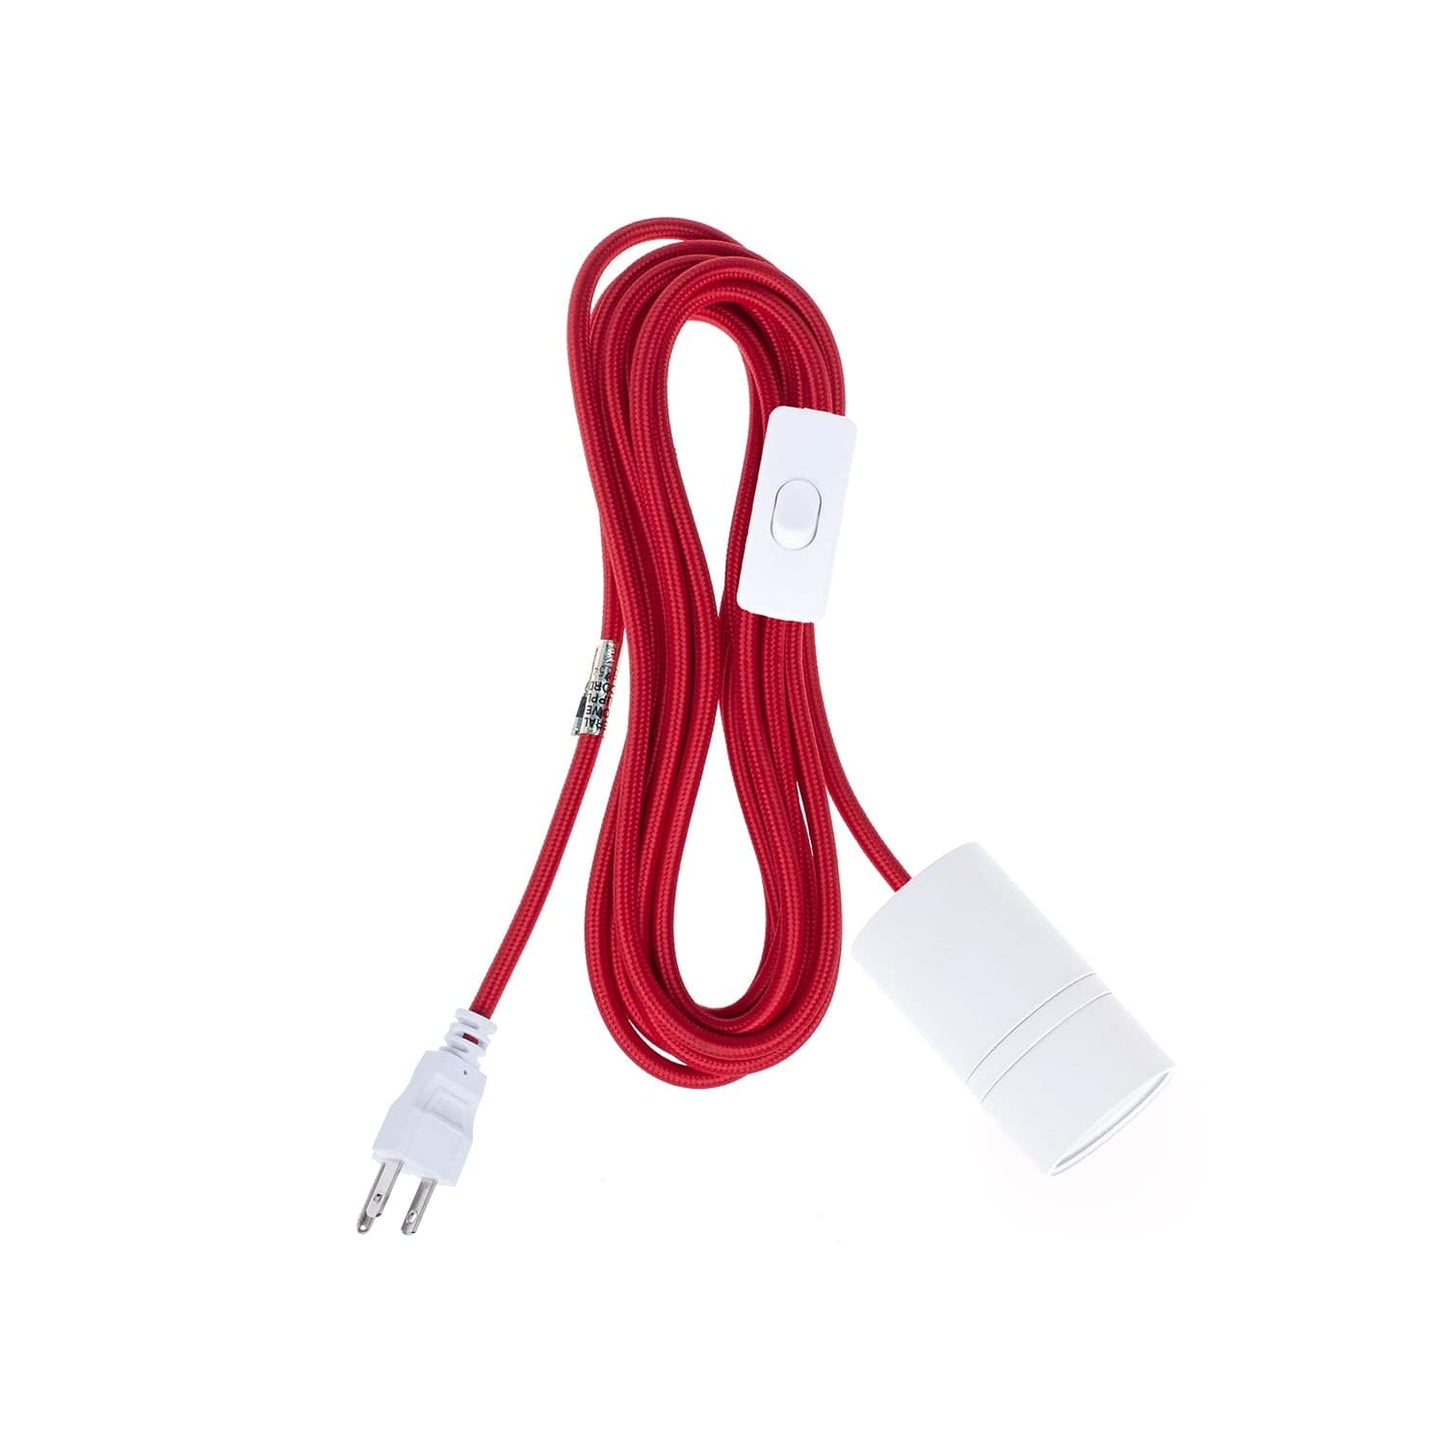 AiO White Chroma Plug-In Cord Set